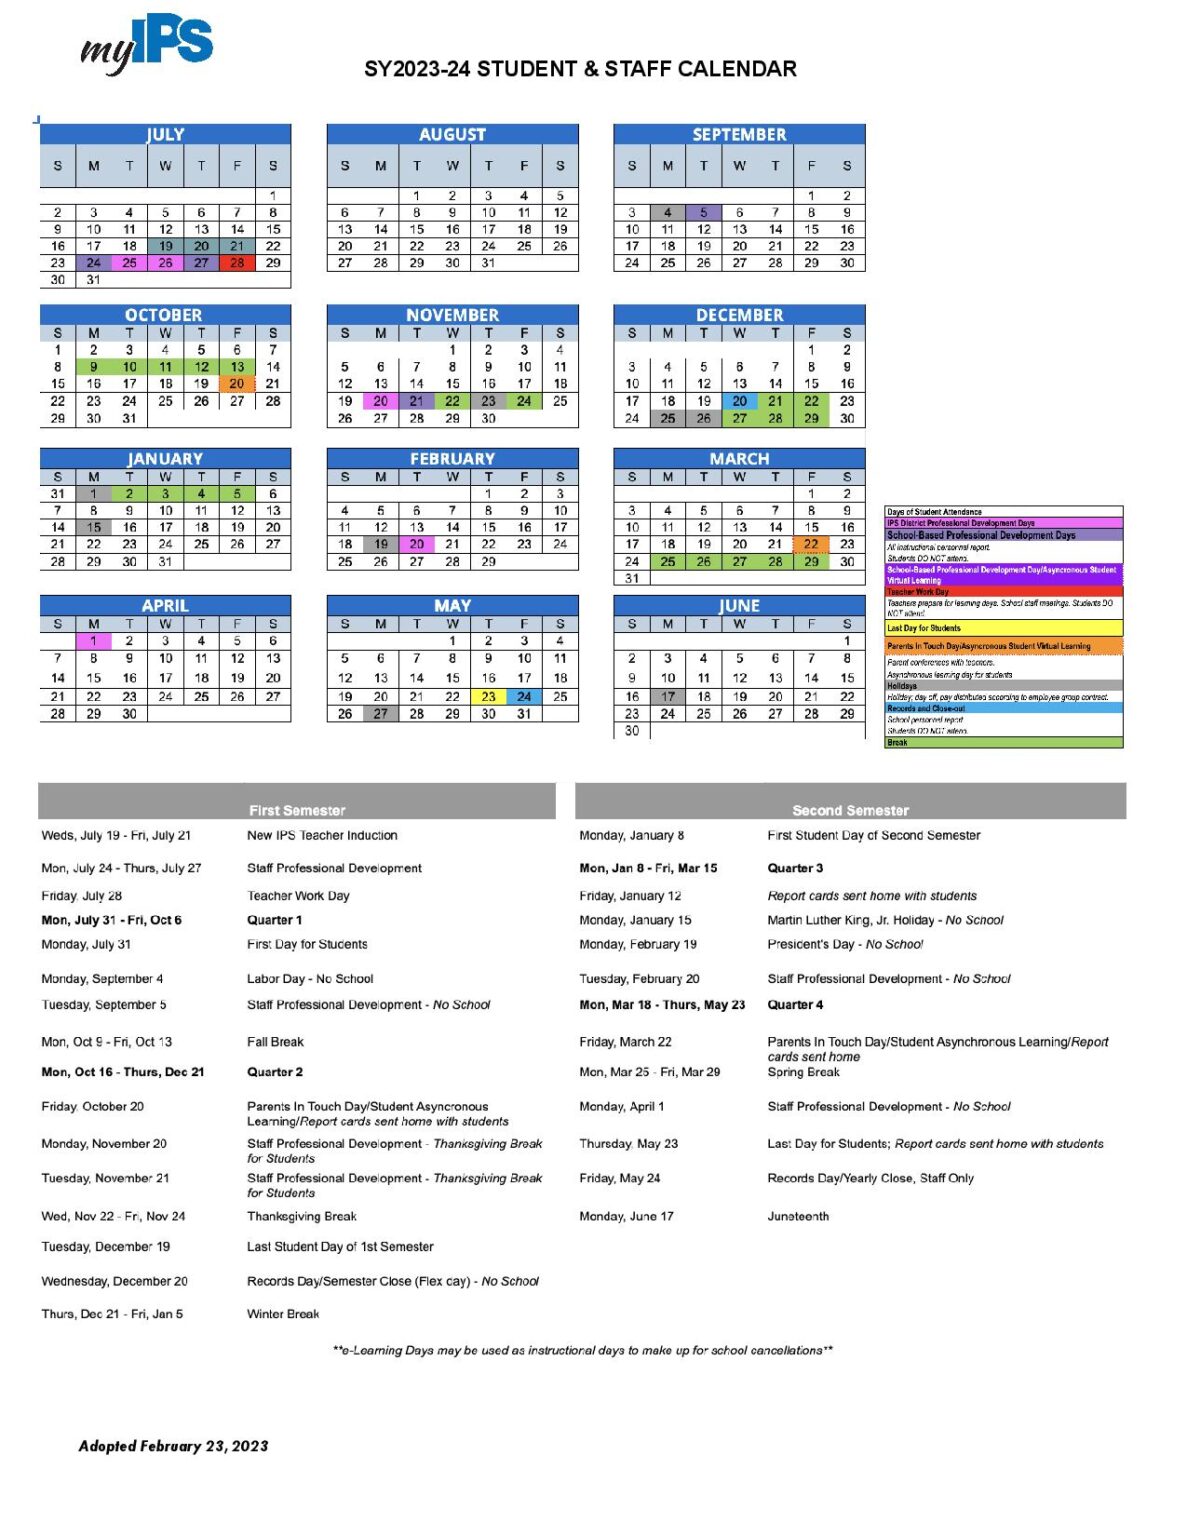 Indianapolis Public Schools Calendar Holidays 20242025 PDF